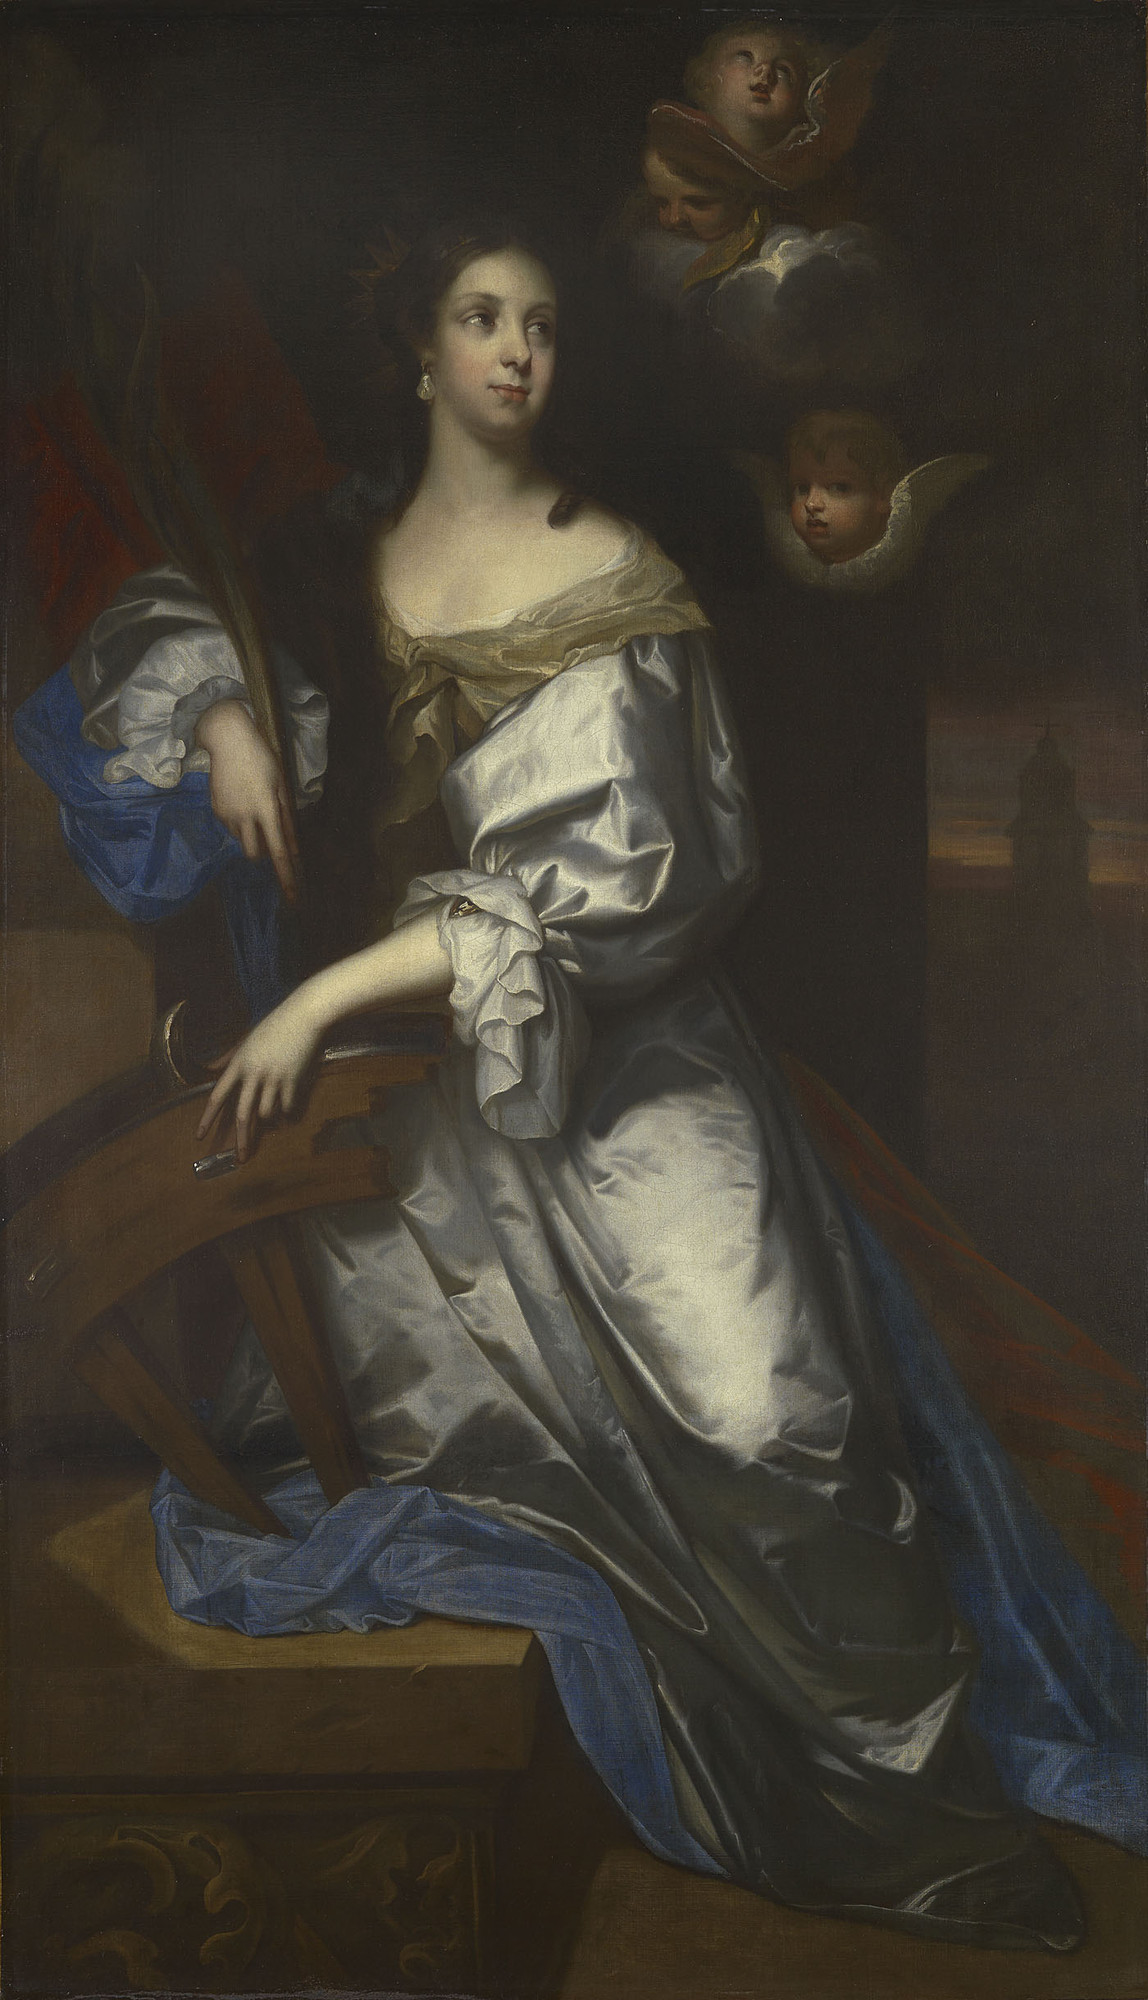 凱瑟琳王后被描繪成“救難聖人”，由雅各布·休斯曼繪